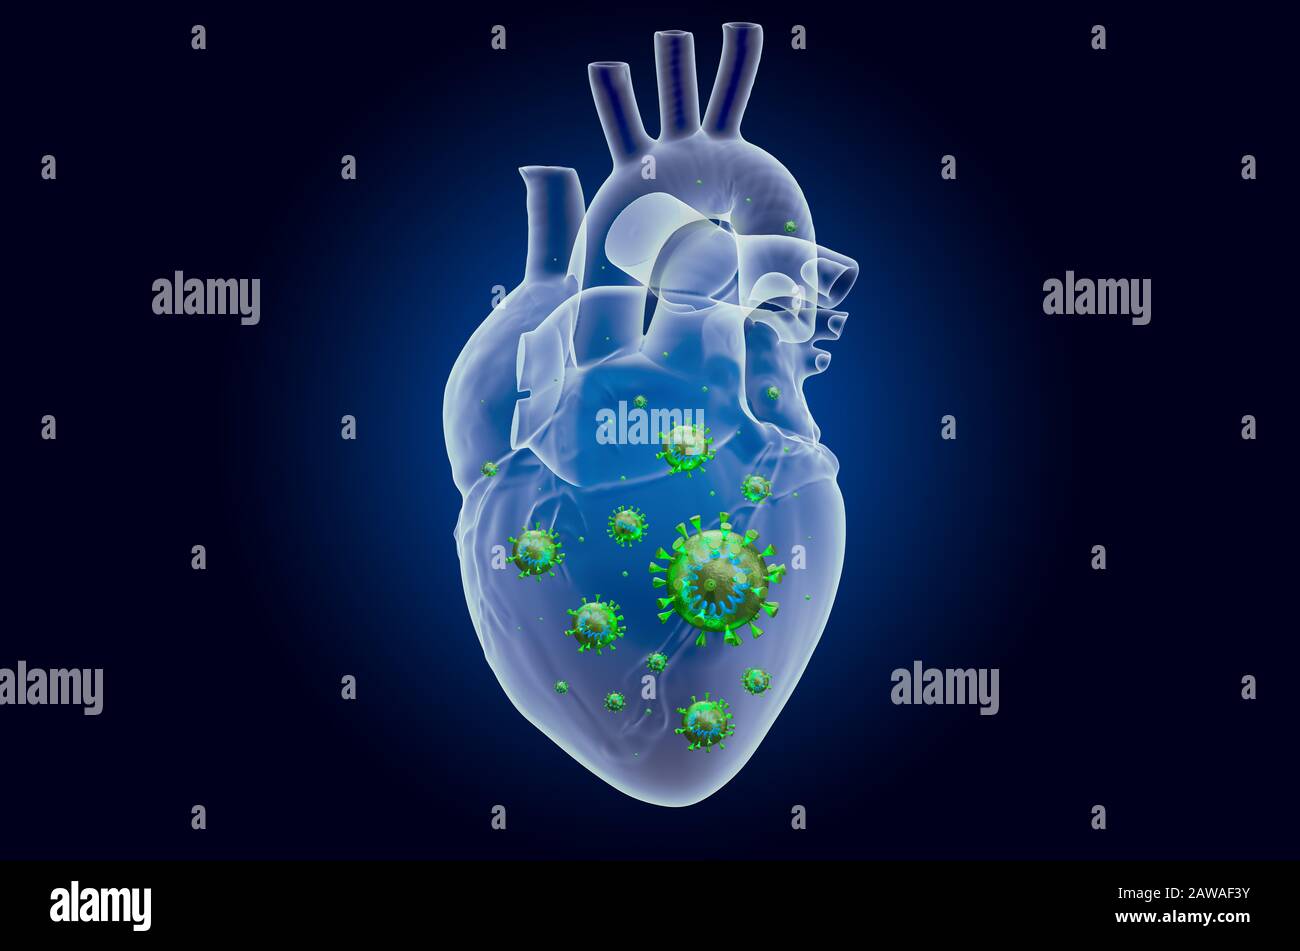 Cœur avec virus, effet de lumière fantôme, hologramme de rayons X. Rendu tridimensionnel sur fond bleu foncé Banque D'Images